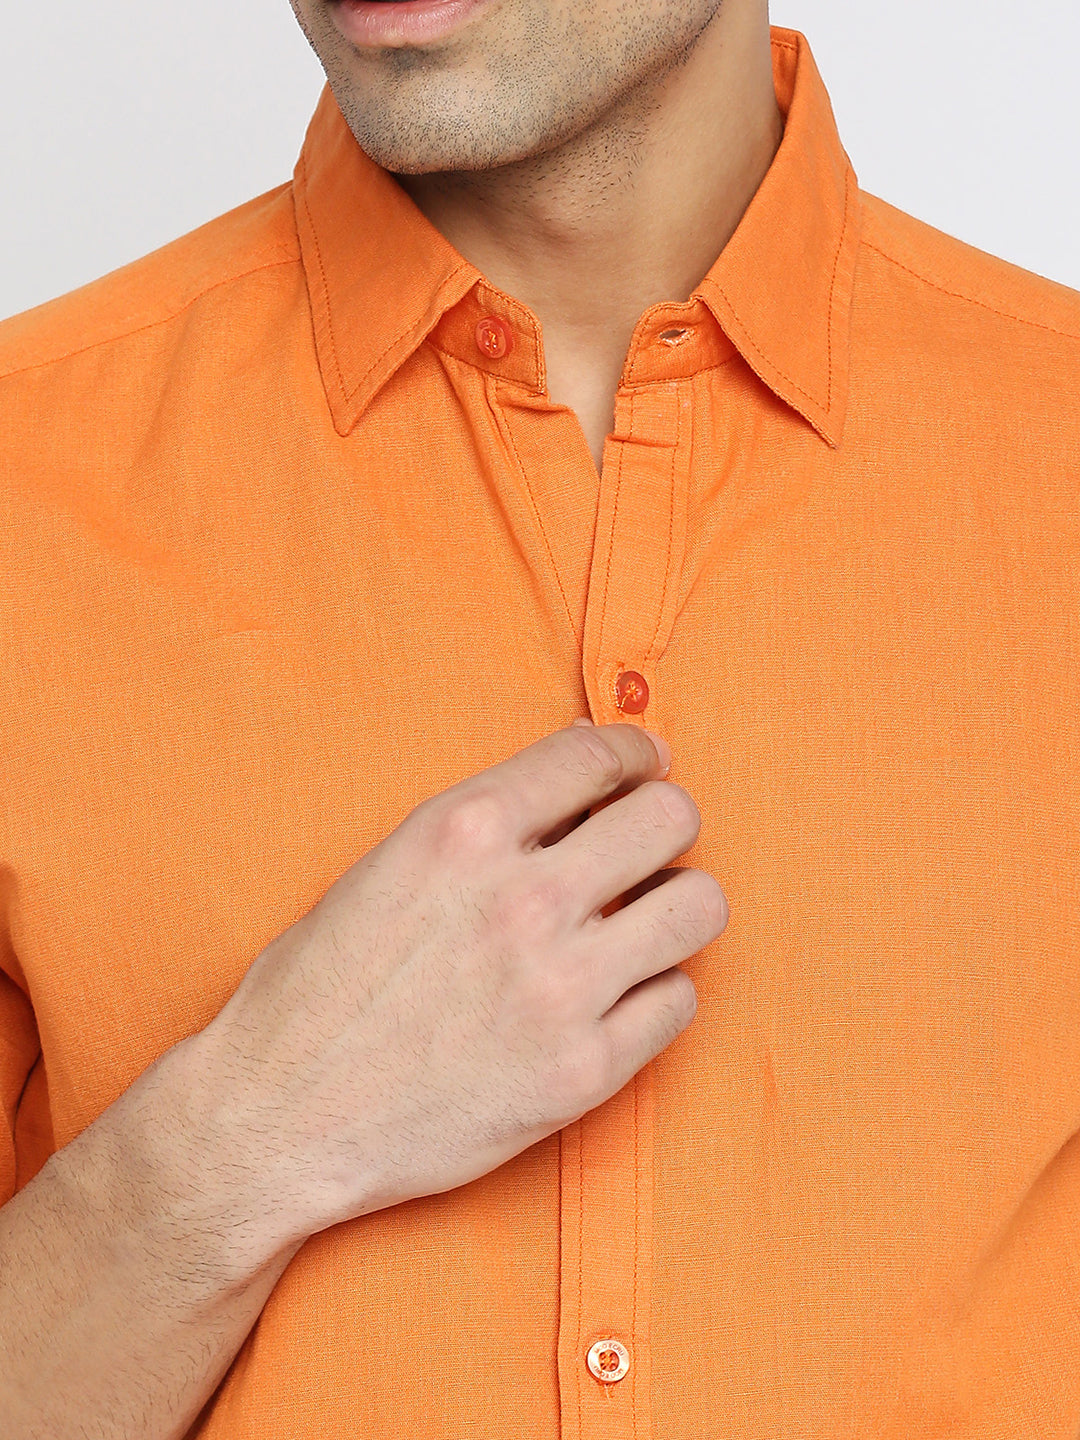 Absolute Linen Cotton Orange Slim Fit Shirt